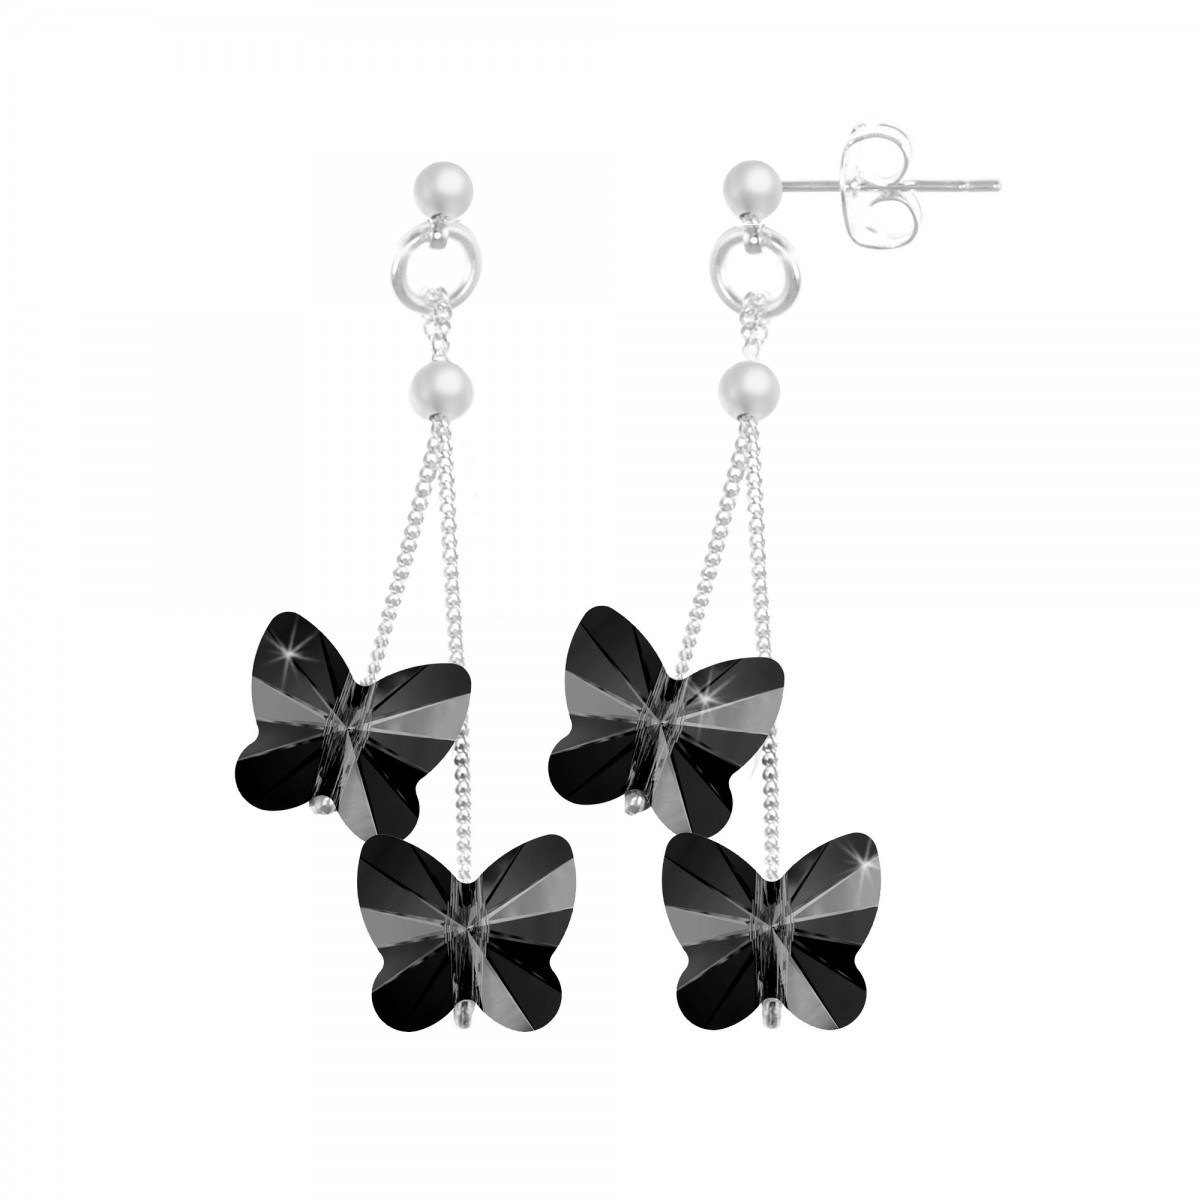 Boucles d'oreilles SC Crystal papillons noirs ornées de Cristaux scintillants